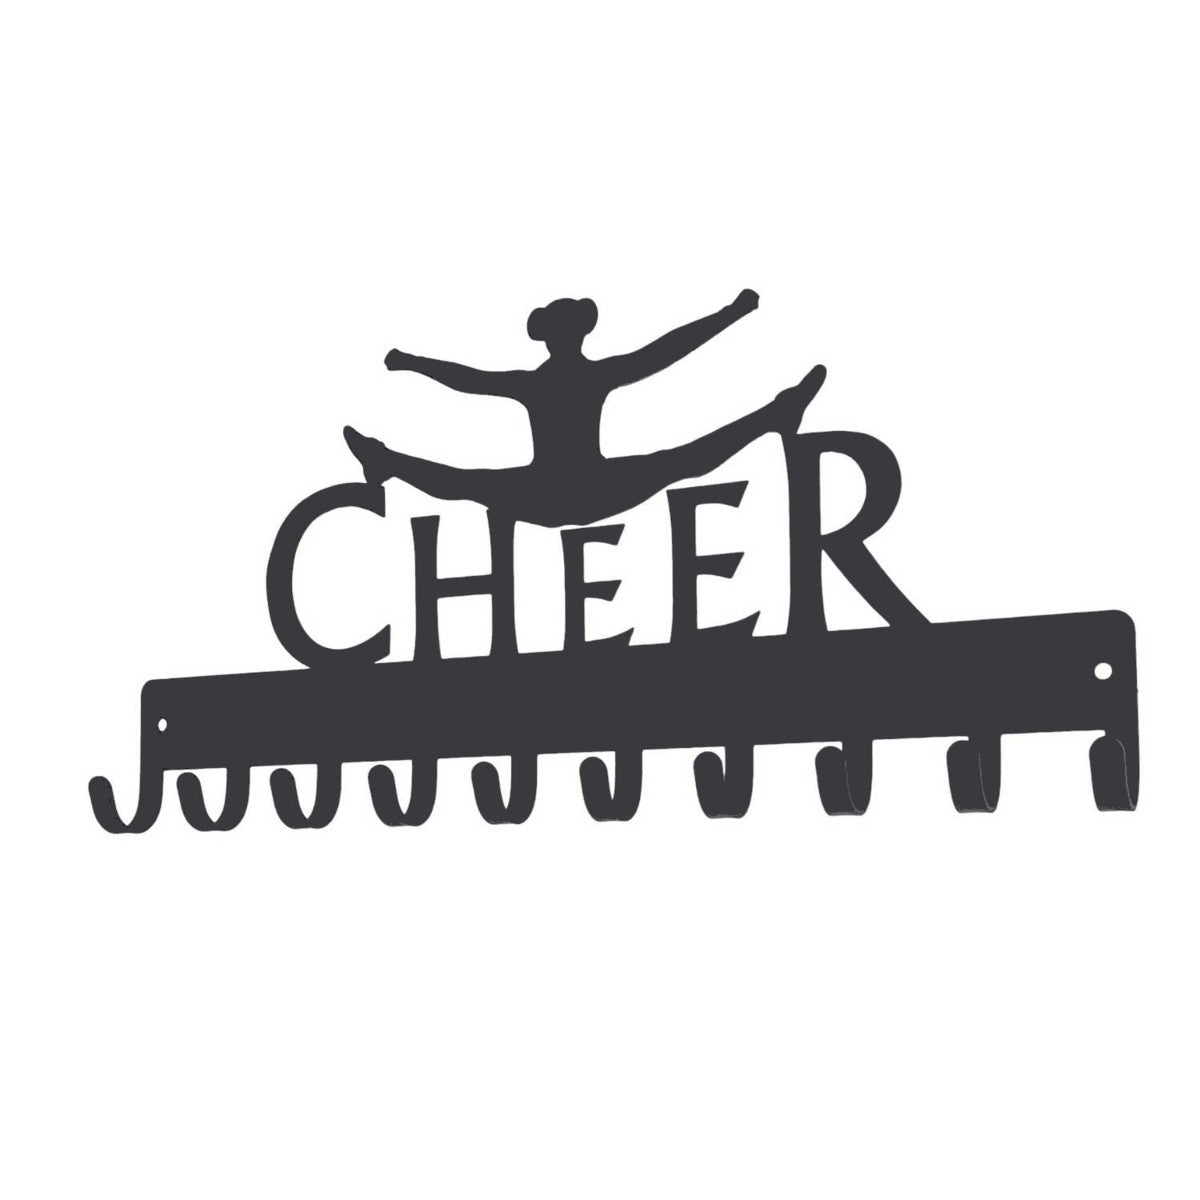 Cheerleader Medal Hanger - Name Optional